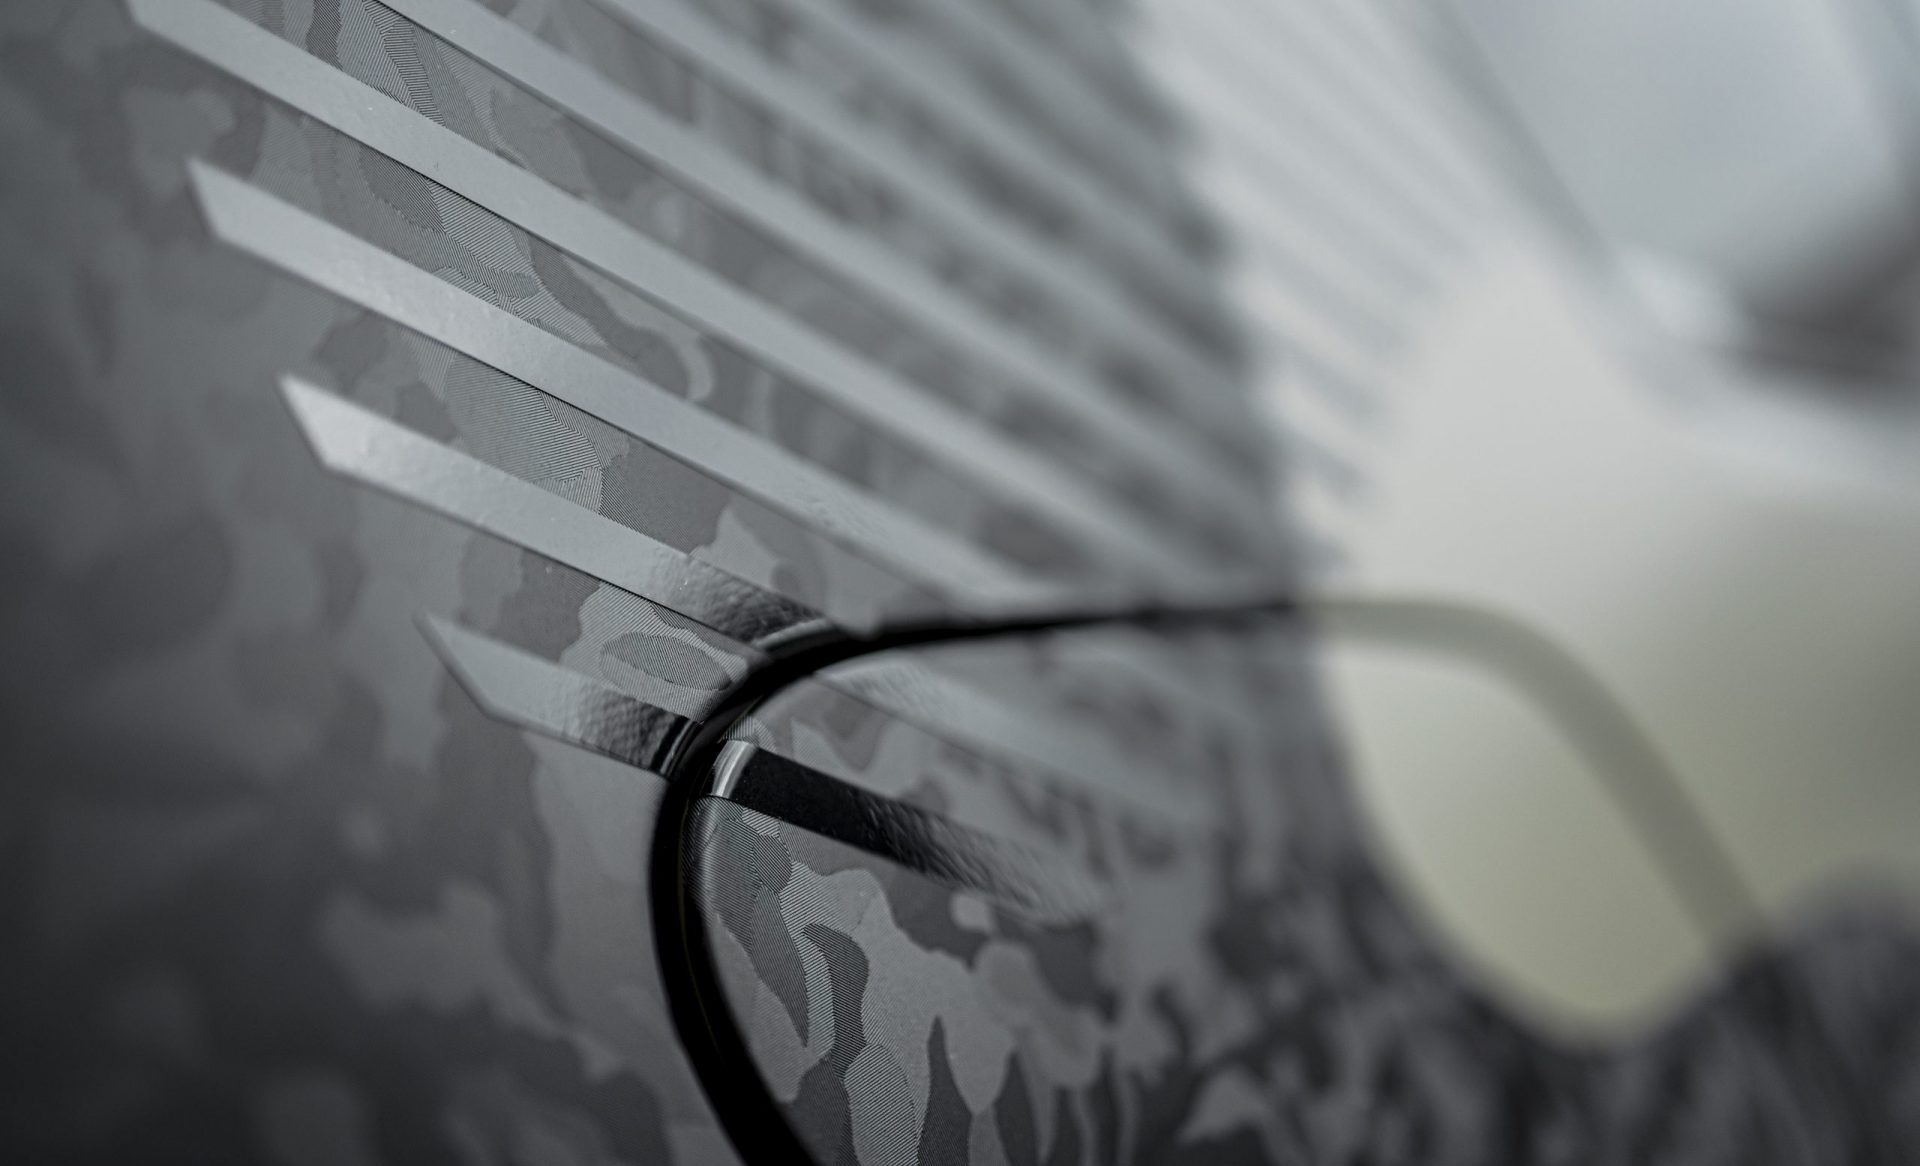 Designfolierung camouflage Golf 7 GTI Detail